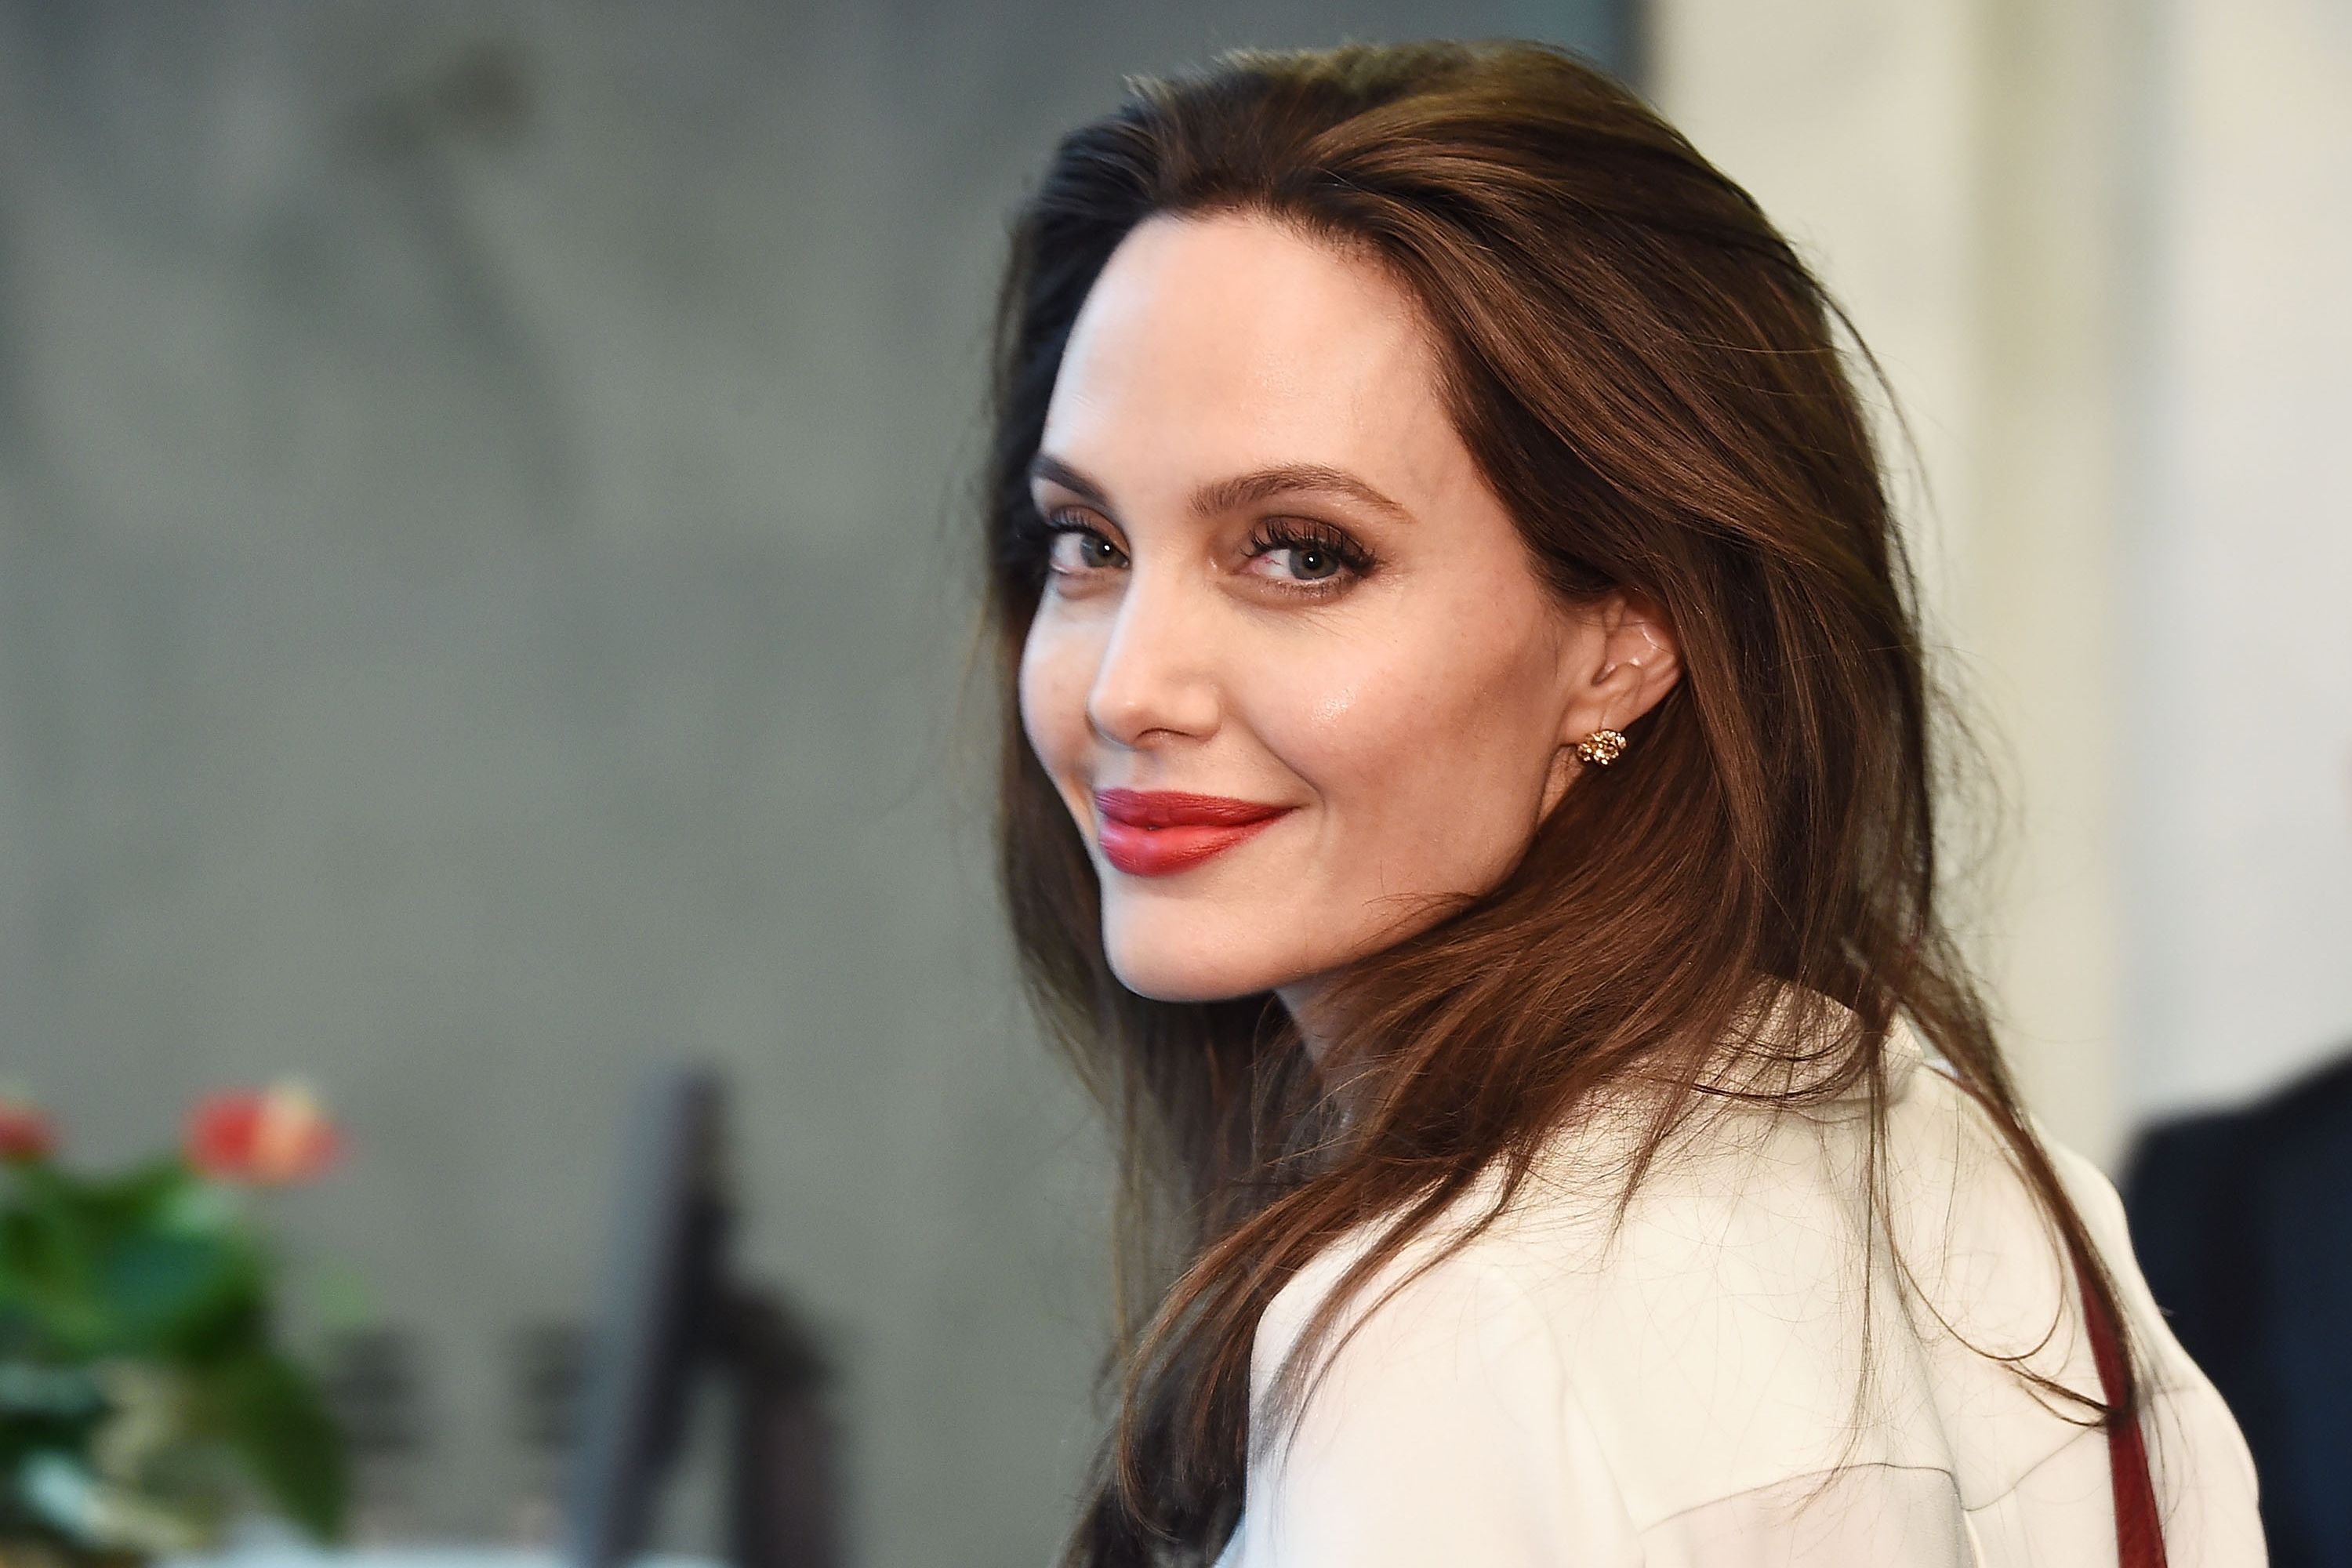   Angelina Jolie đã đưa ra quyết định loại bỏ gen BRCA gây nguy cơ ung thư vú và buồng trứng  